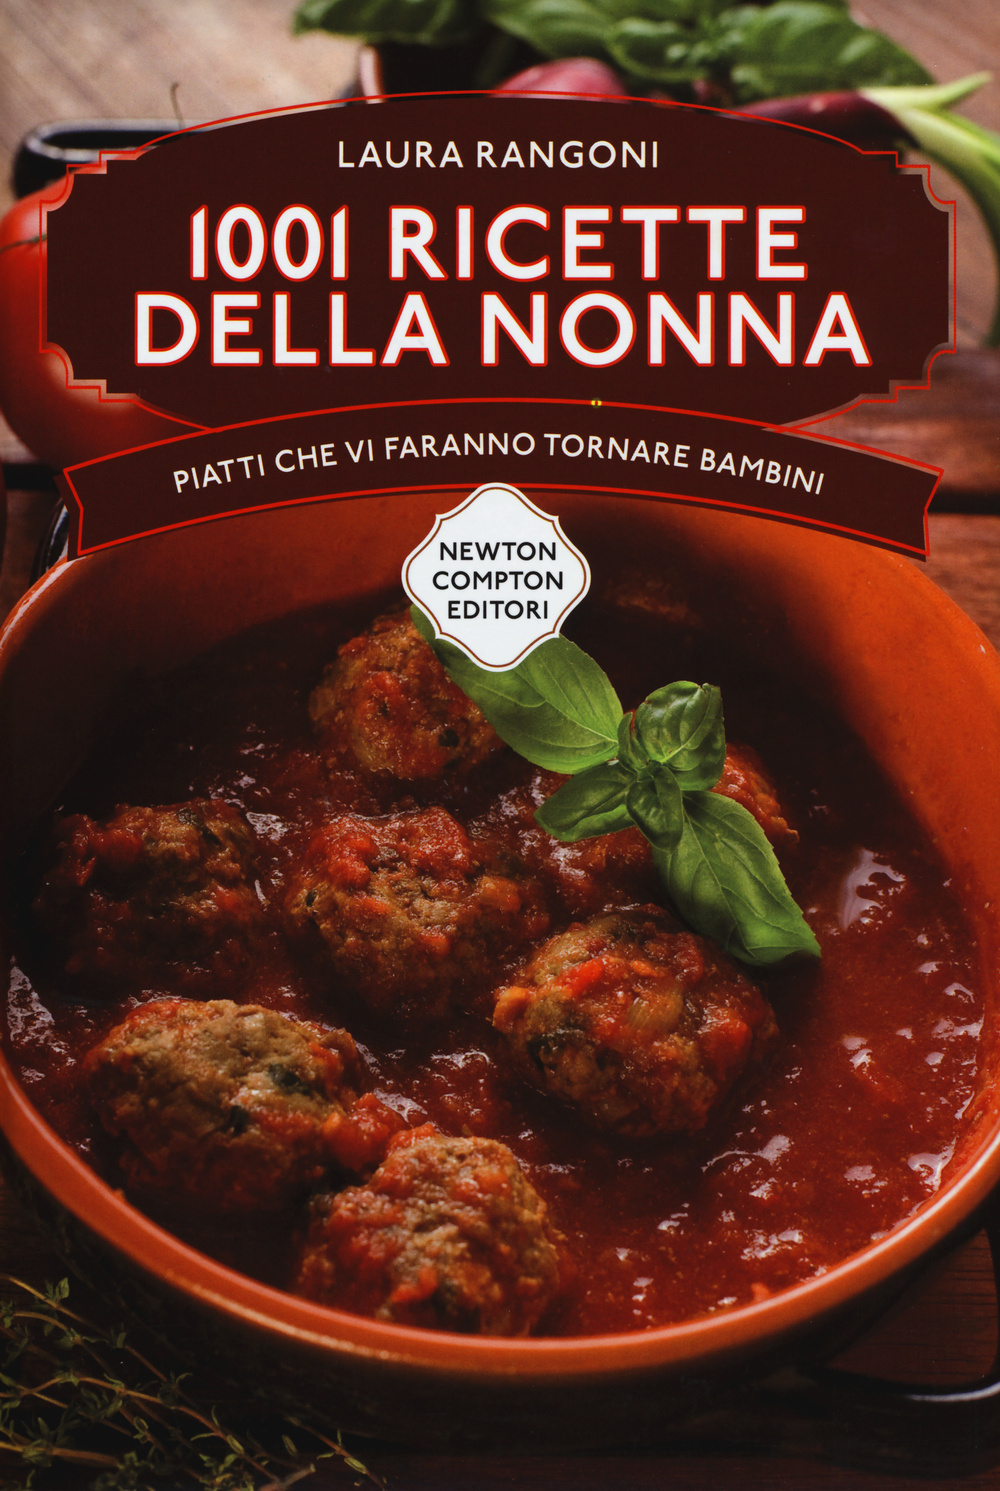 Le ricette della nonna. 1001 piatti della tradizione italiana che vi faranno tornare bambini